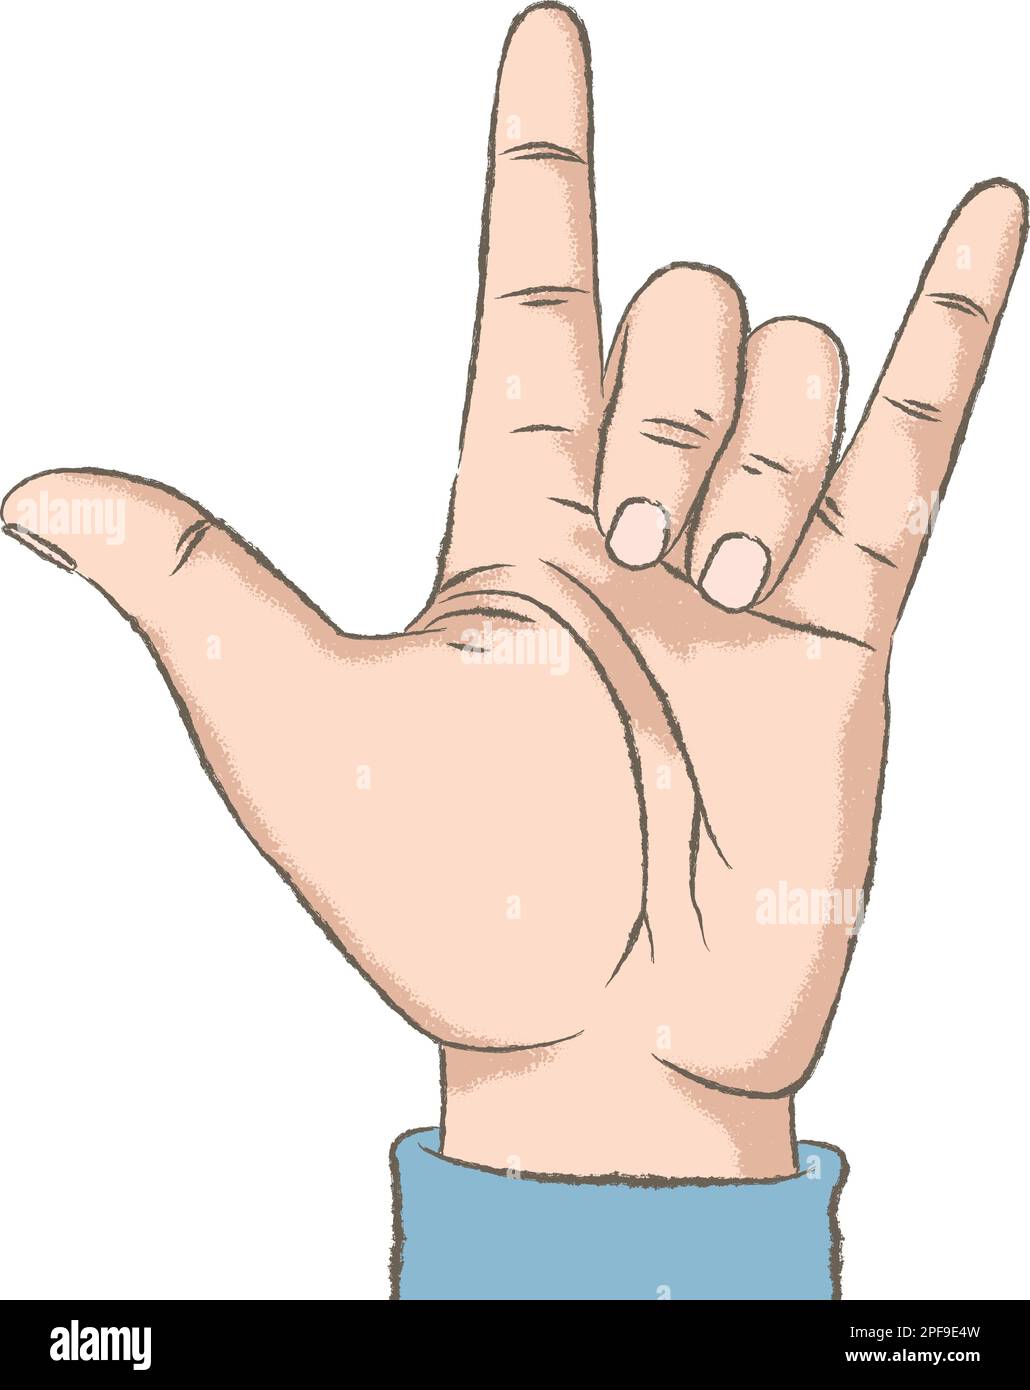 Illustration de couleur rétro avec une texture rugueuse d'une main montrant le signe I Love You, ou Rock. Illustration de Vecteur